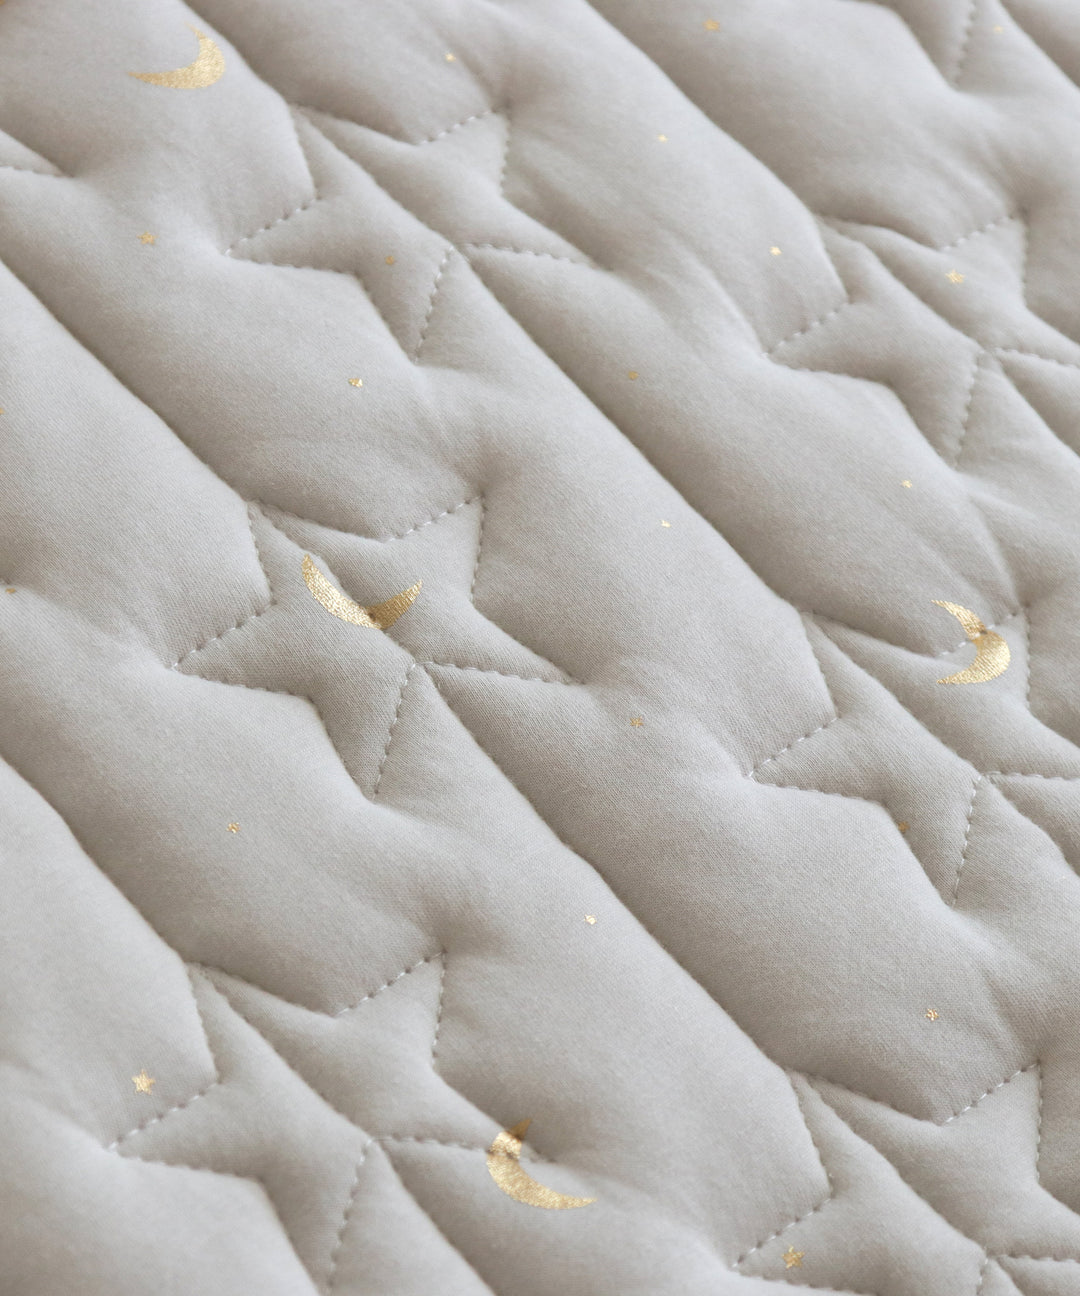 Sleeping mat + special mattress pad set 47.2″ x 47.2″ (Jersey knit)